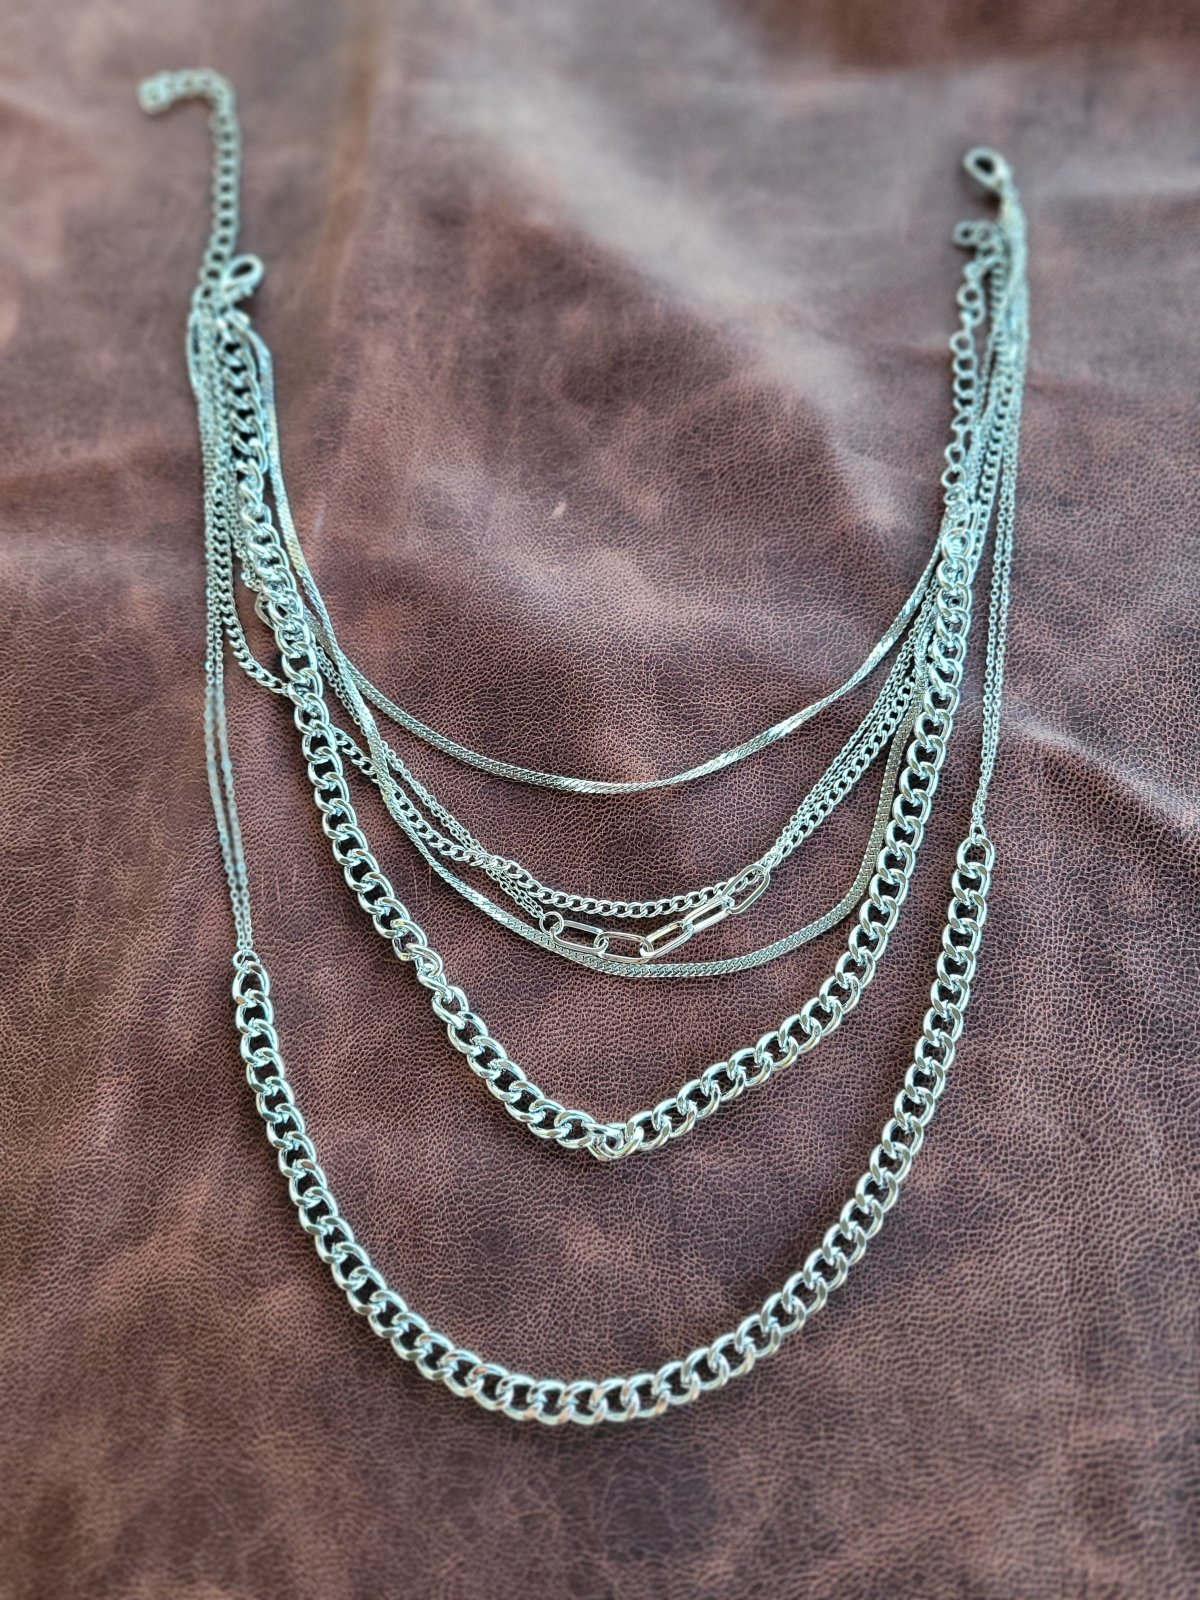 Millennium Paperclip Necklace - necklace